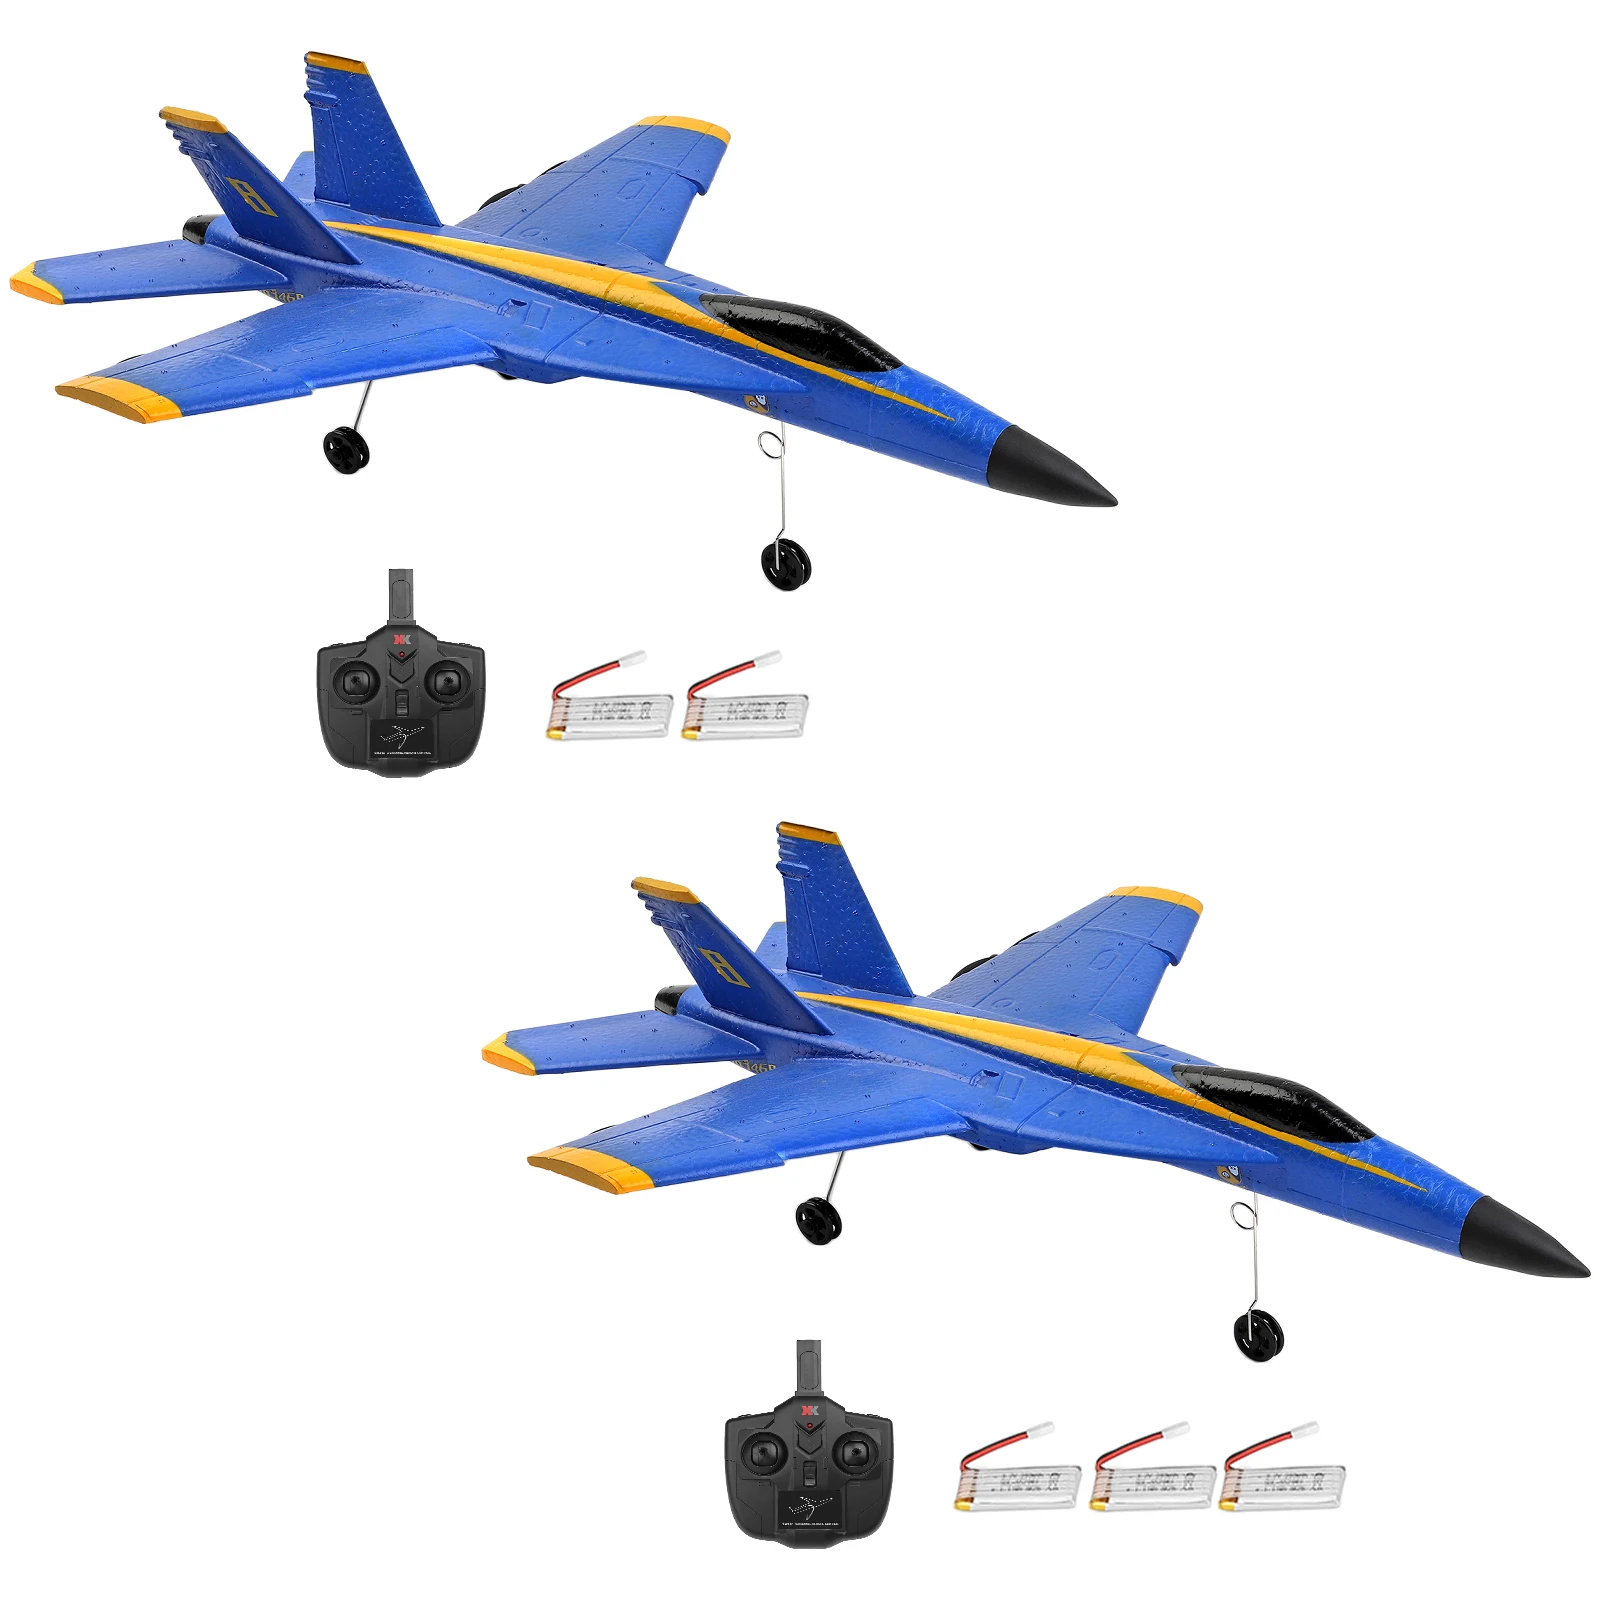 

Wltoys A190 радиоуправляемый самолет 2,4 ГГц 2 канала EPP пенопласт с неподвижным крылом модель самолета игрушки с гироскопом для детей и взрослых